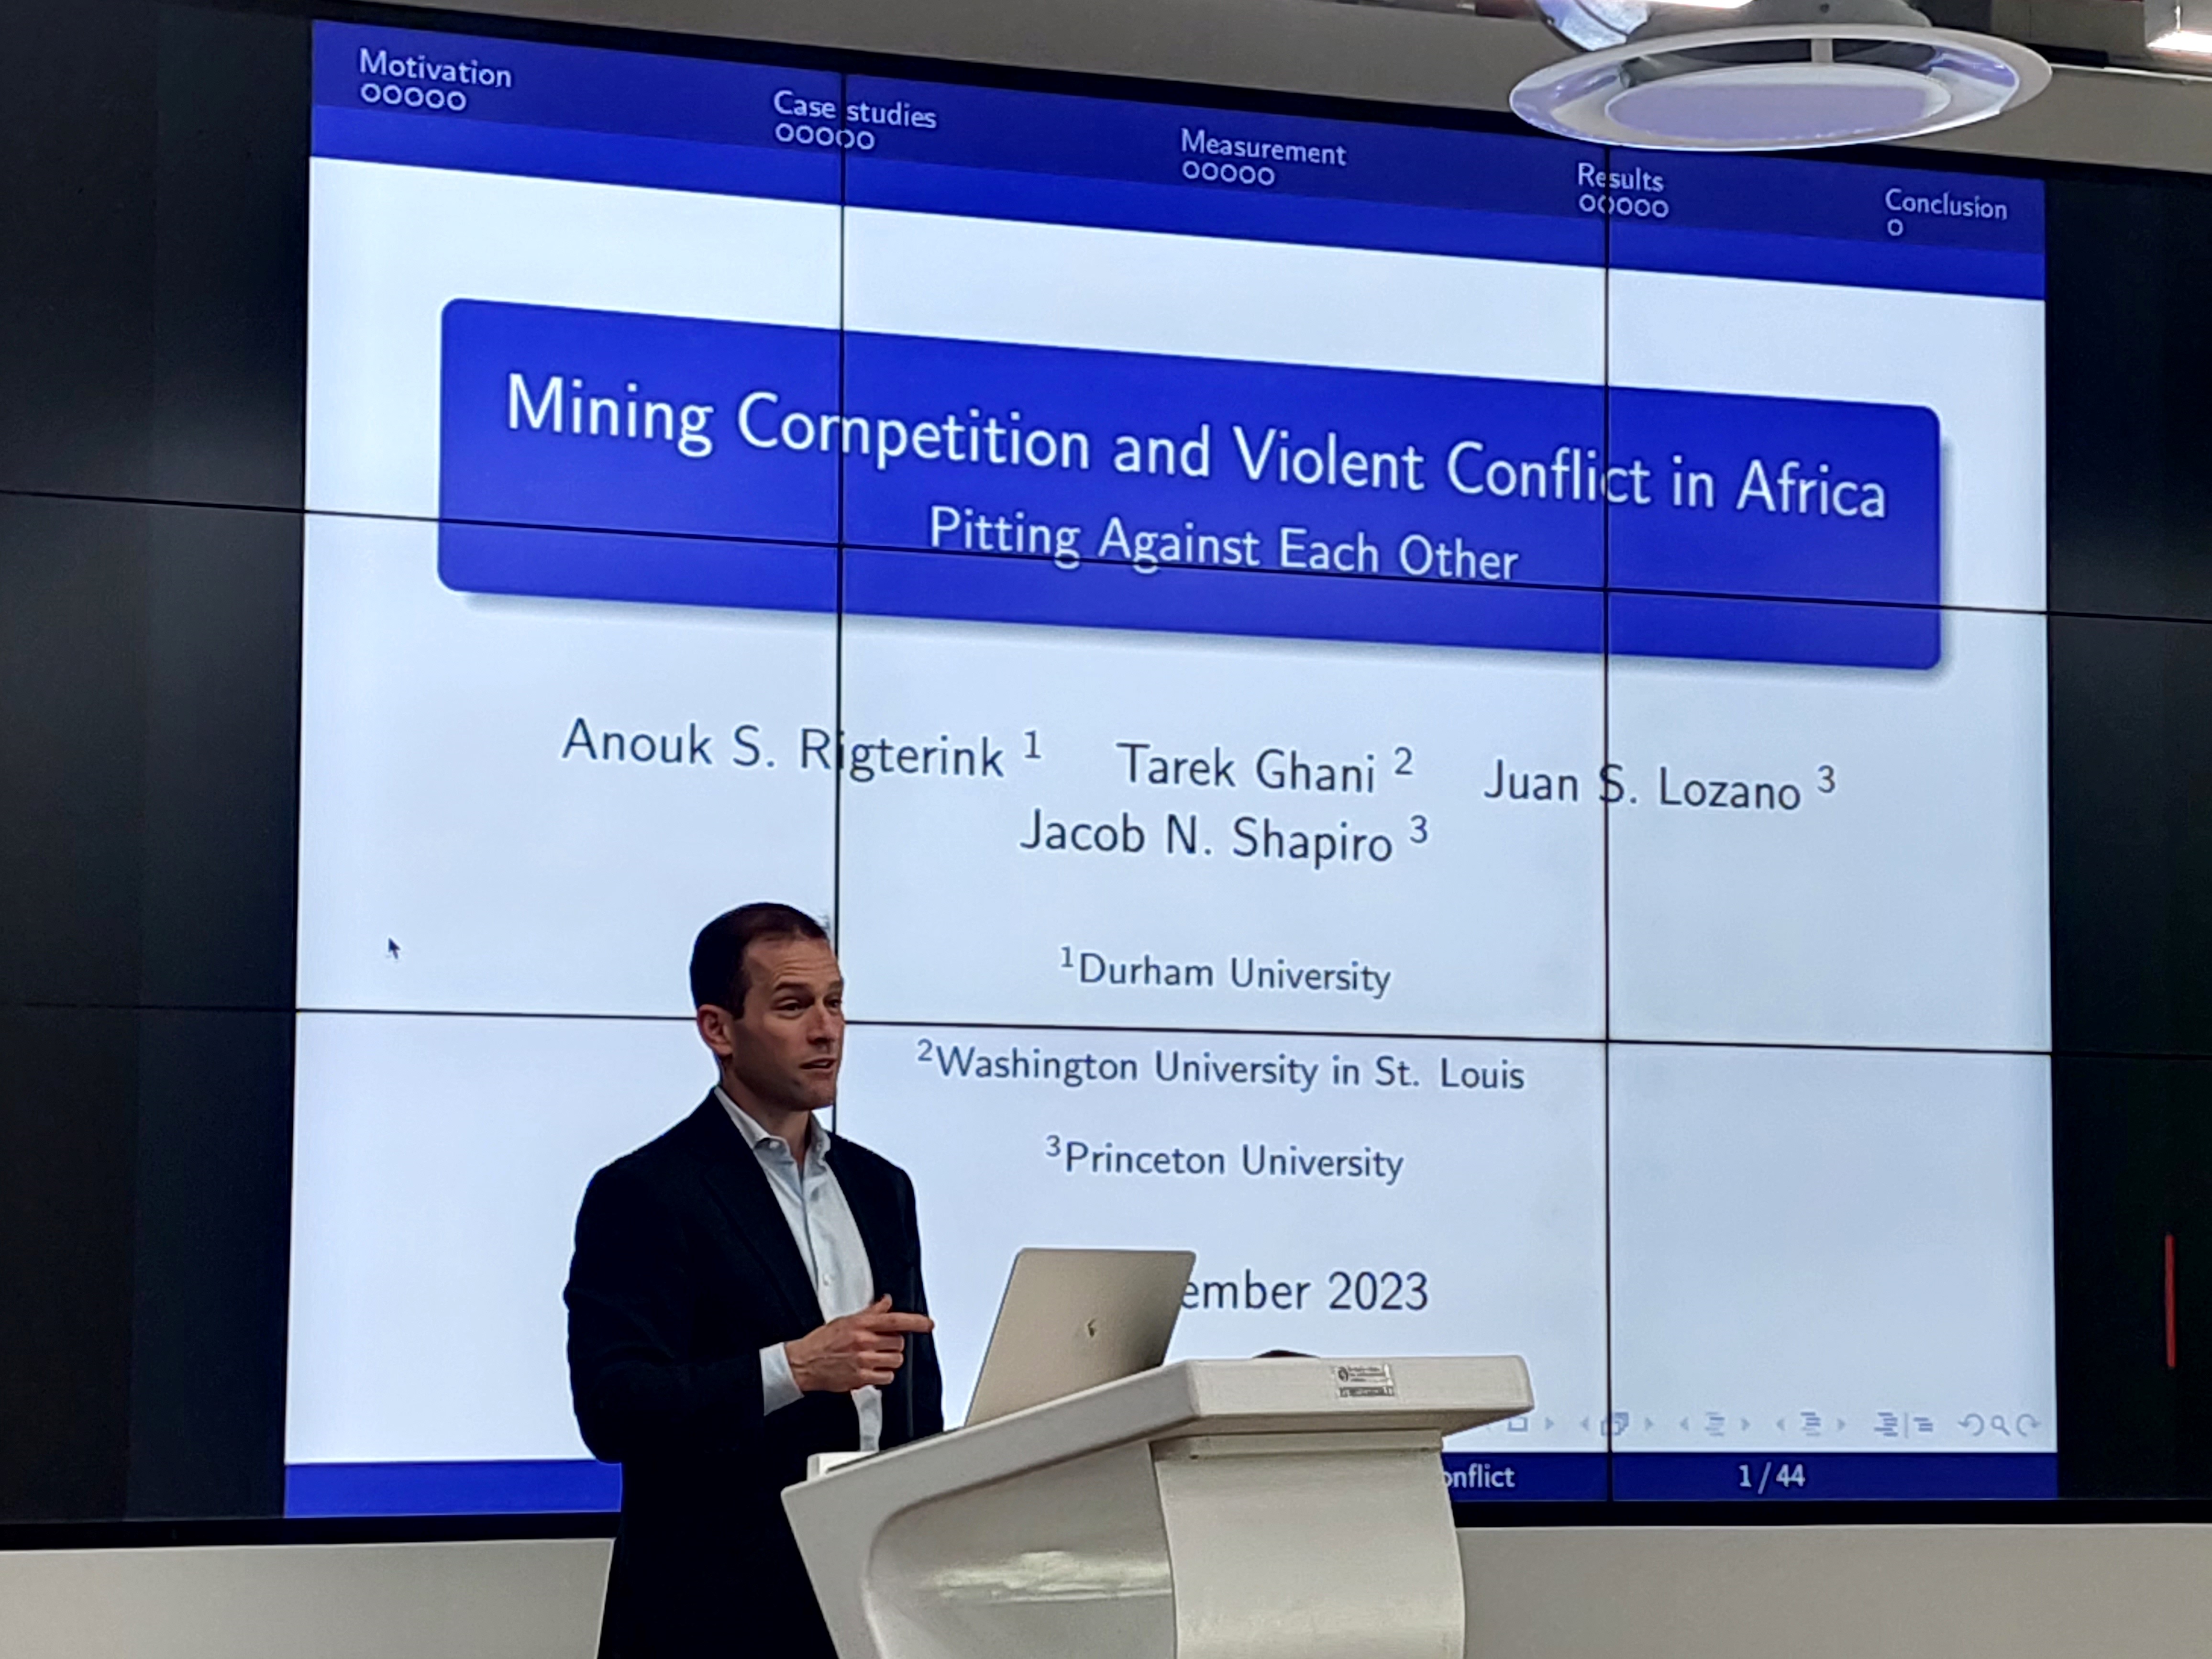 Seminario competencia minera y conflictos violentos en africa portada.jpg